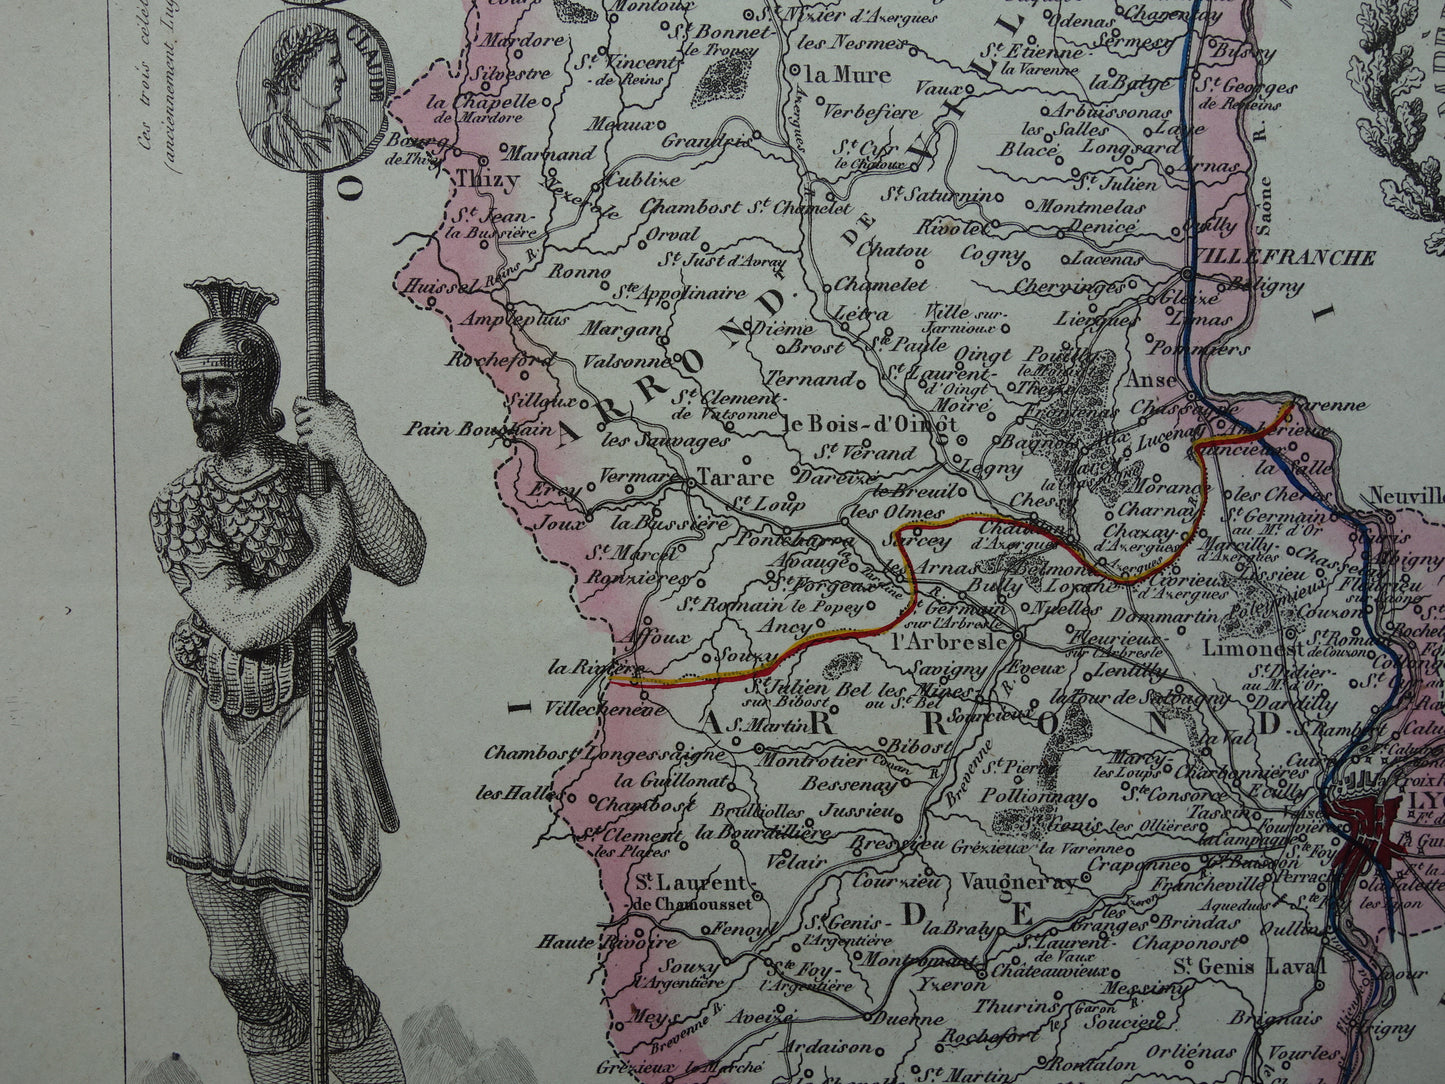 RHONE Oude kaart van Rhône departement in Frankrijk uit 1851 originele antieke landkaart Lyon historische kaarten